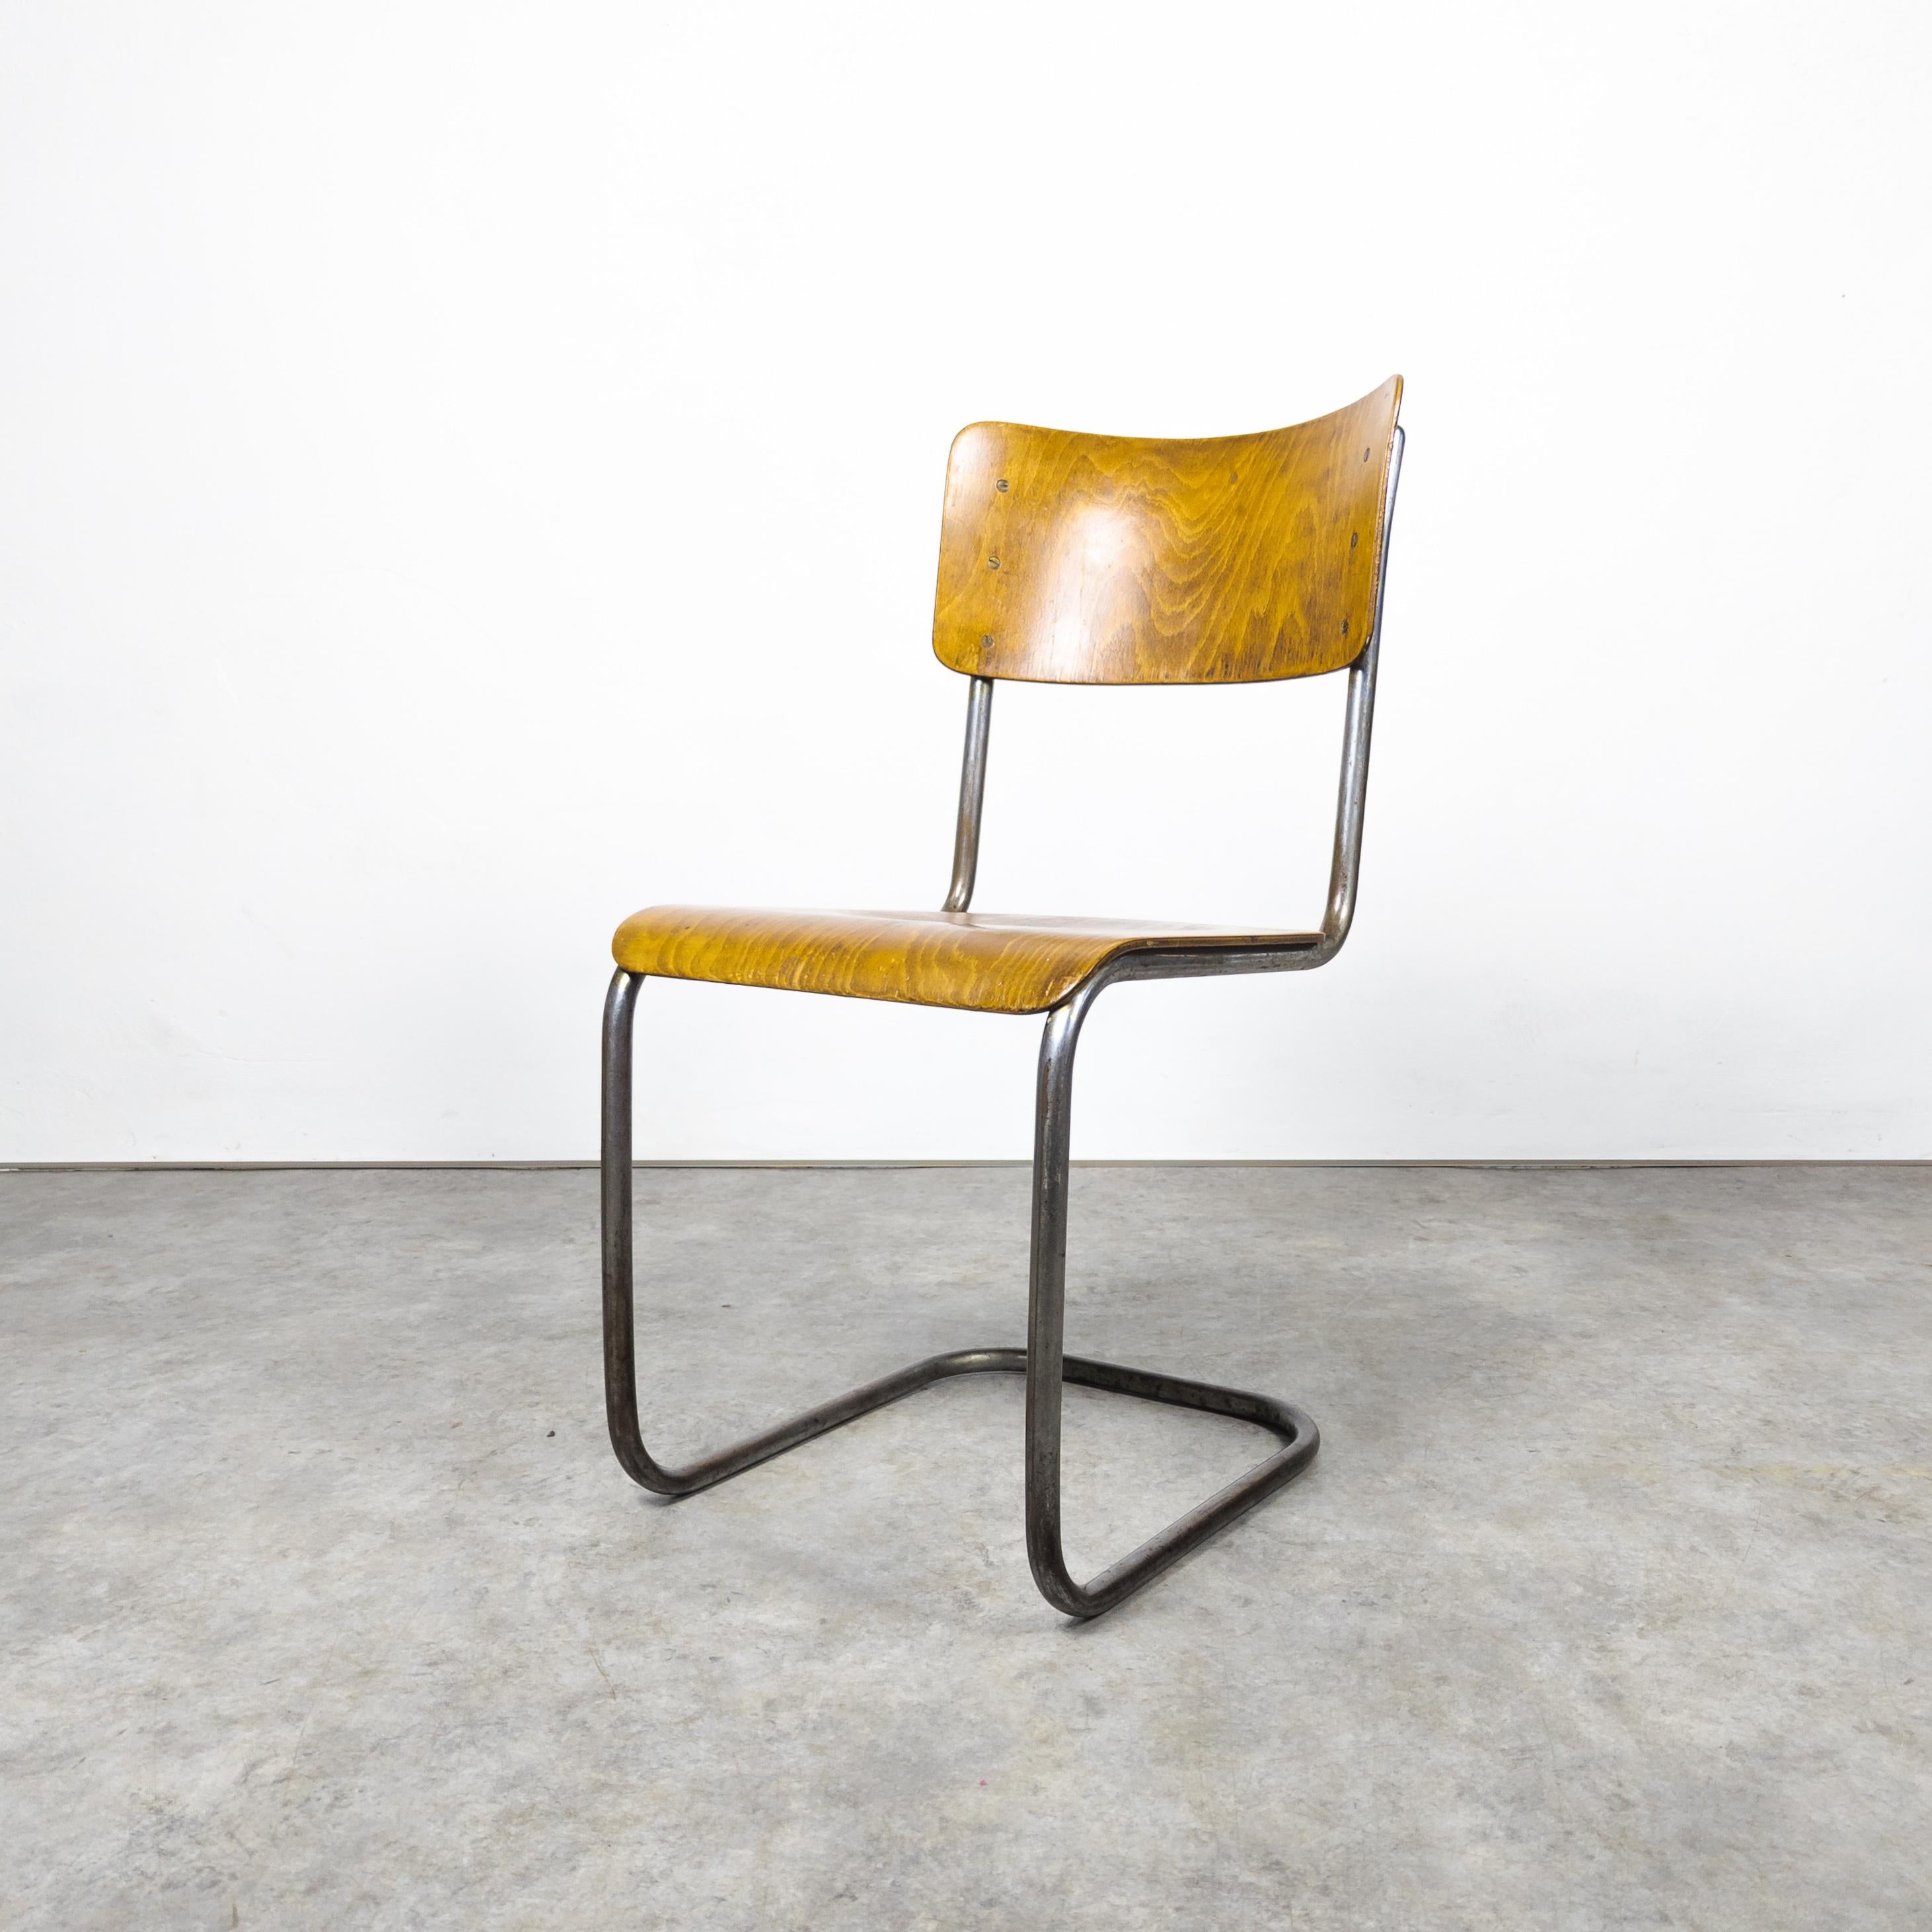 Rare version précoce de la célèbre chaise en acier tubulaire fabriquée par Vichr & co. dans l'ancienne Tchécoslovaquie dans les années 1930. Chaise cantilever Bauhaus avec un cadre robuste en acier tubulaire, mettant en valeur le charme vintage. Les